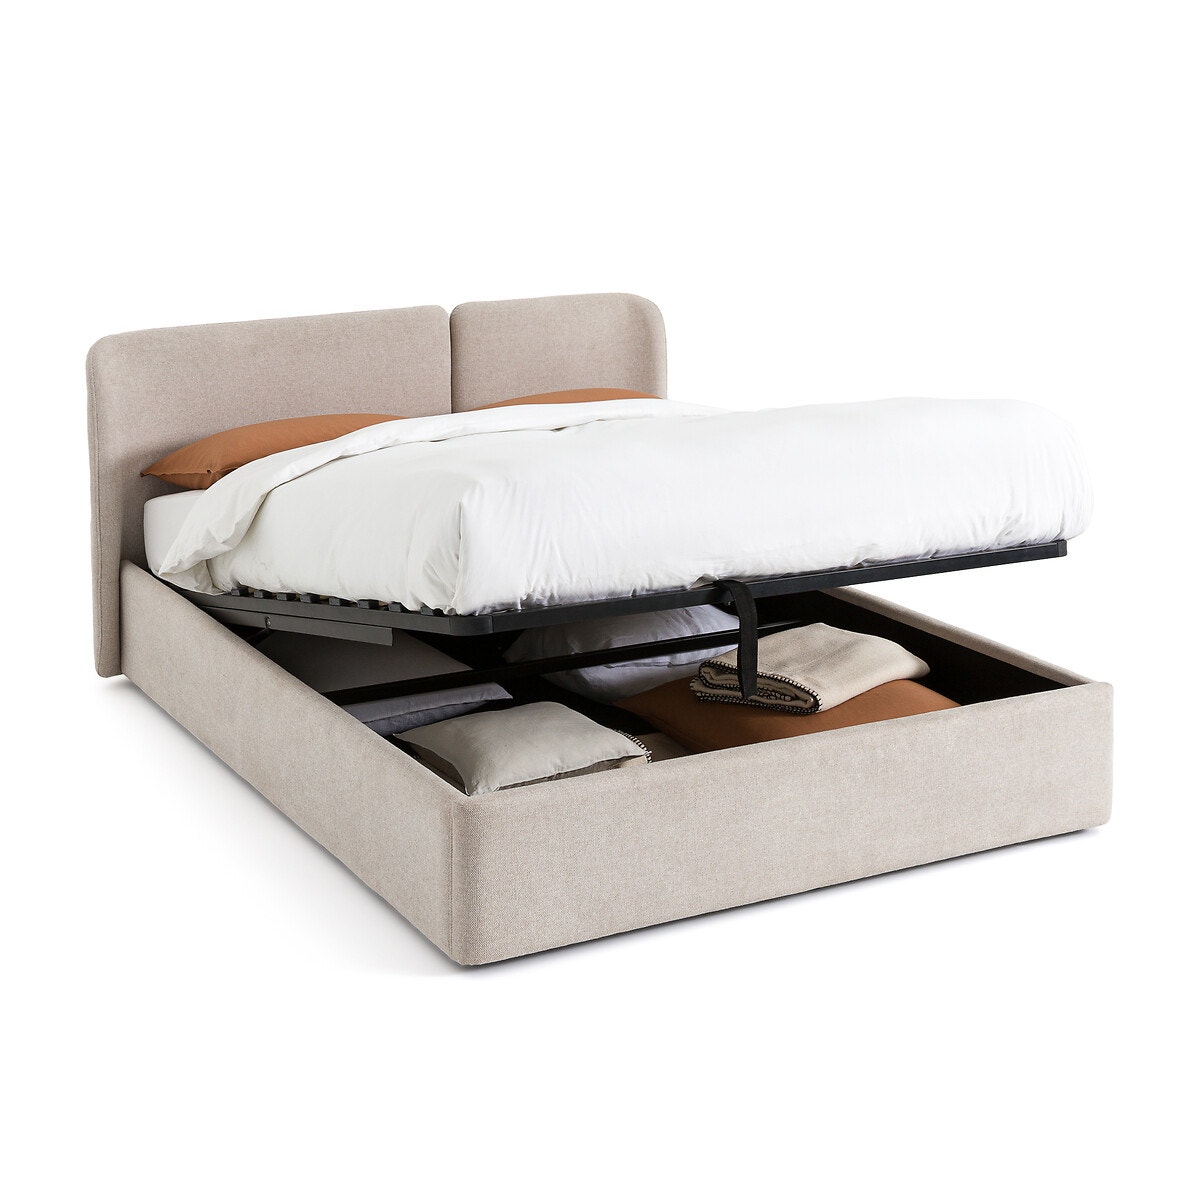 Κρεβάτι με αποθηκευτικό χώρο και ανακλινόμενο τελάρο με τάβλες, Molona